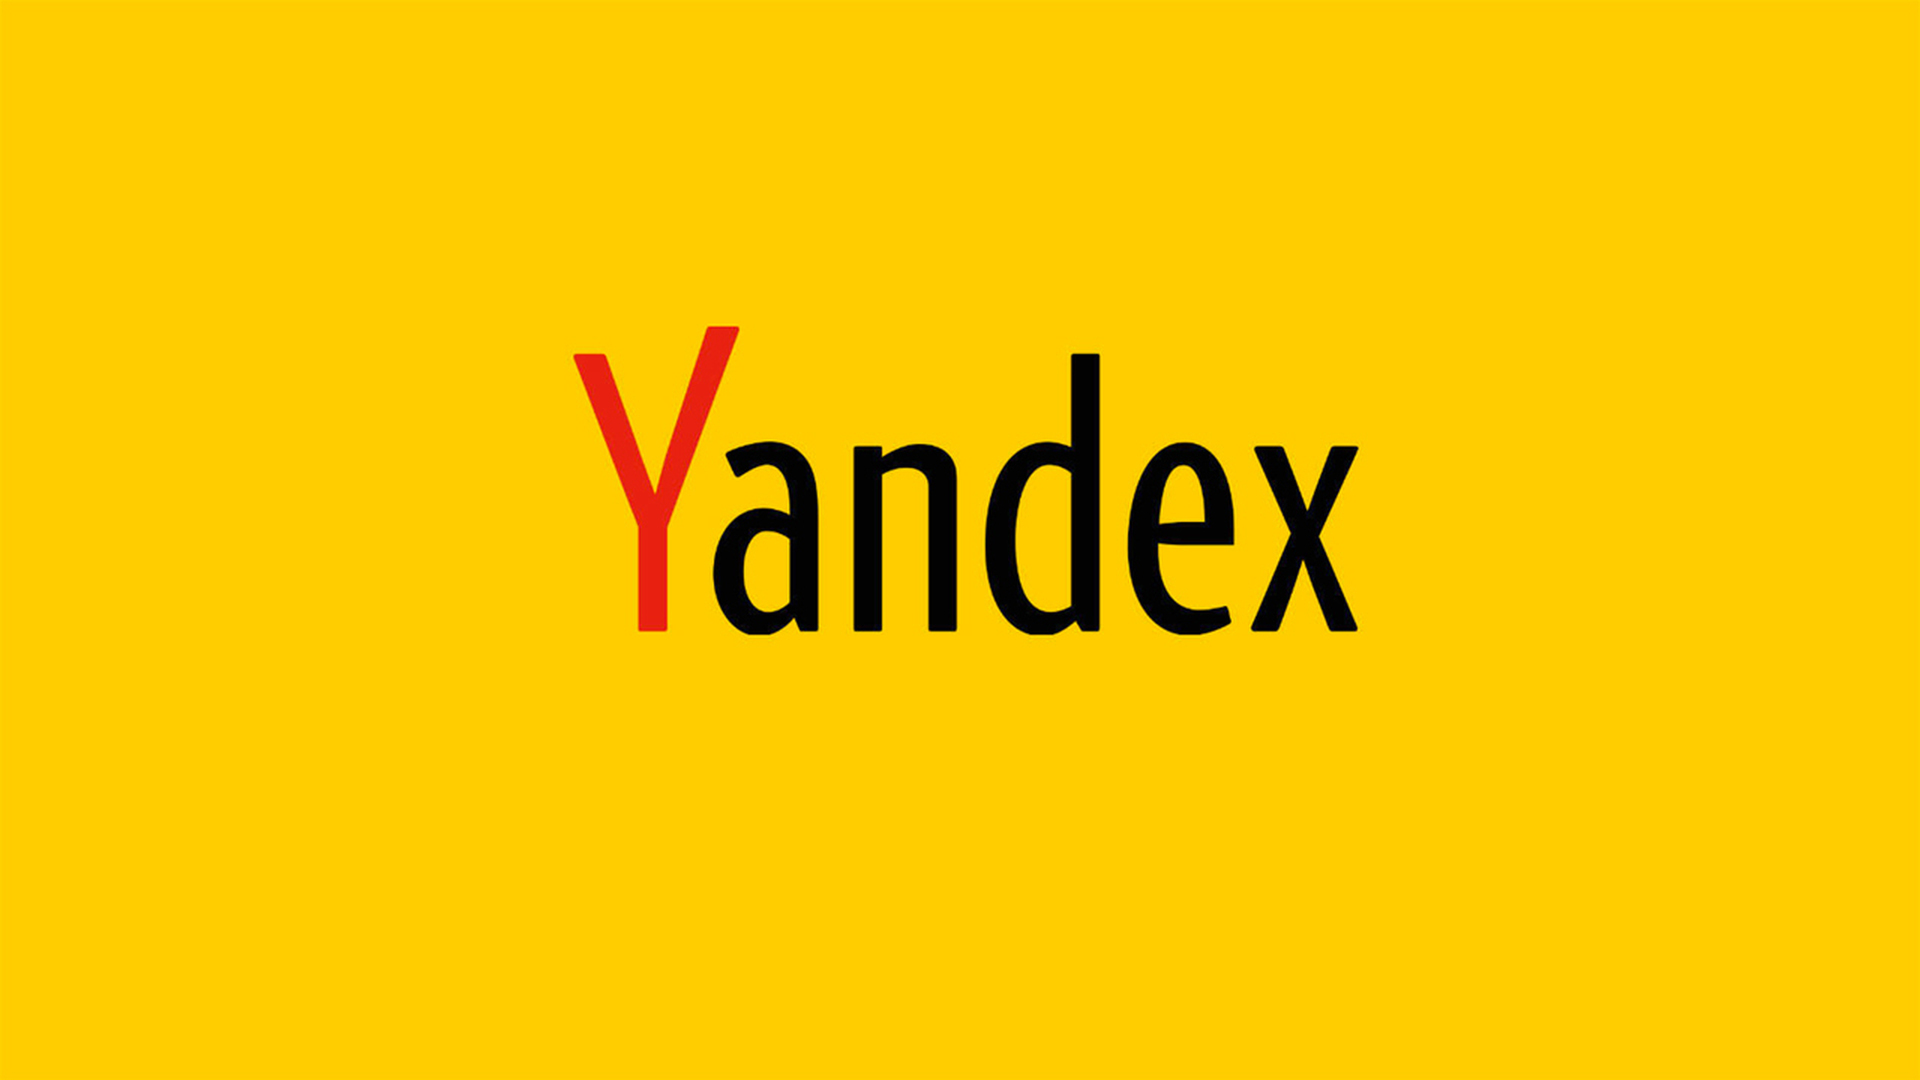 С 20 мая шортить акции Yandex N.V. будет нельзя — Мосбиржа